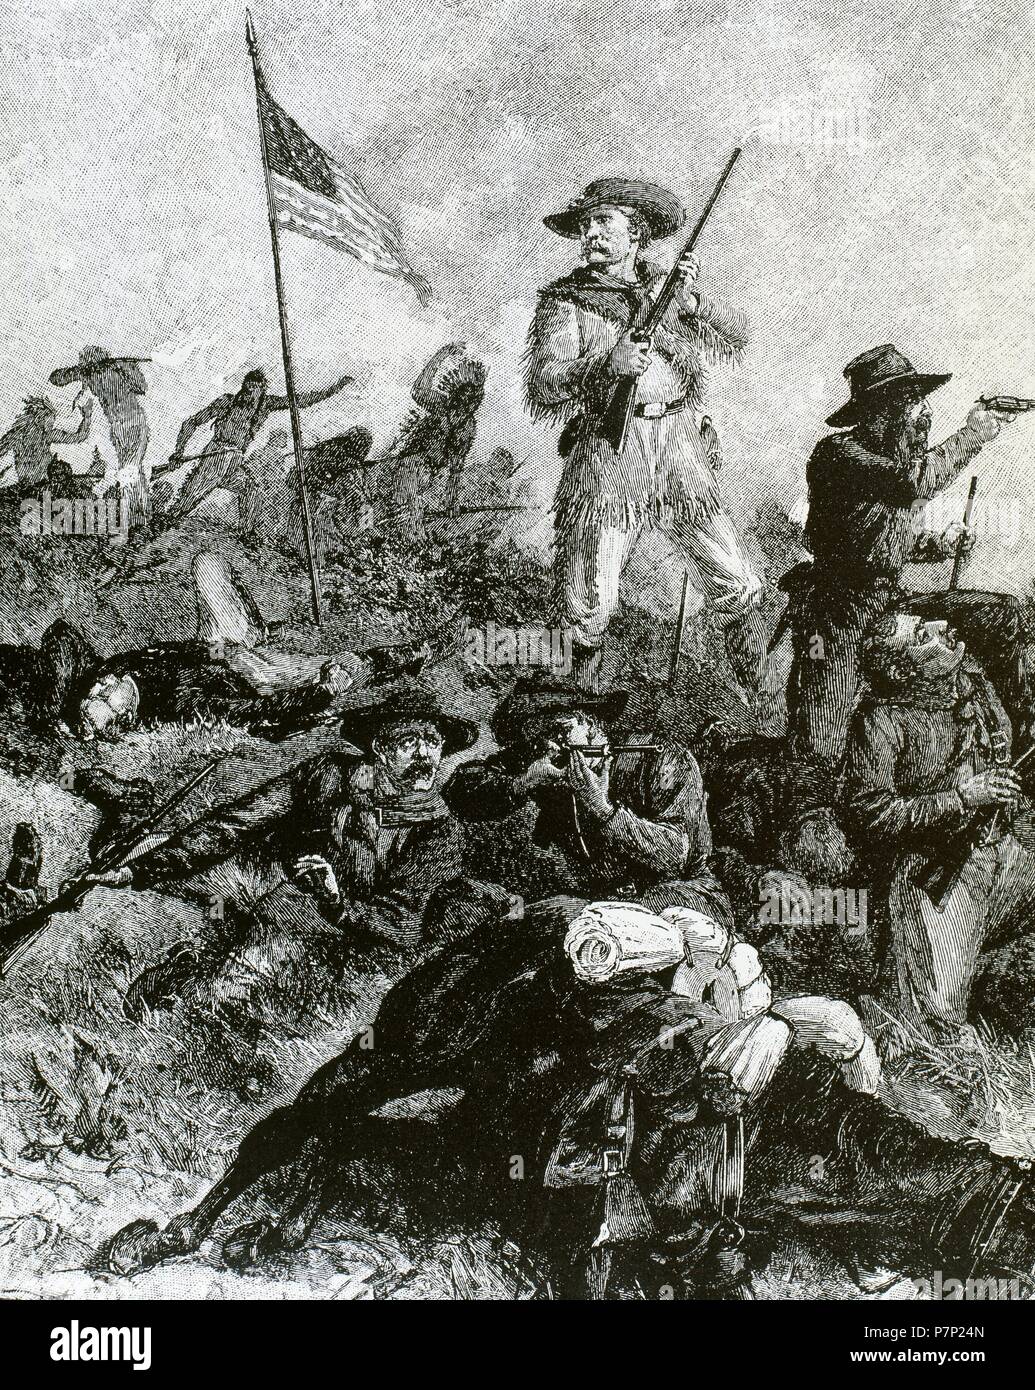 George Armstrong Custer (1839-1876). United States Army Officer und Kavallerie Kommandant in Amerikanischer Bürgerkrieg und die American Indian Wars. Custer in der Schlacht von den Little Bighorn, wo er starb. Gravur. Stockfoto